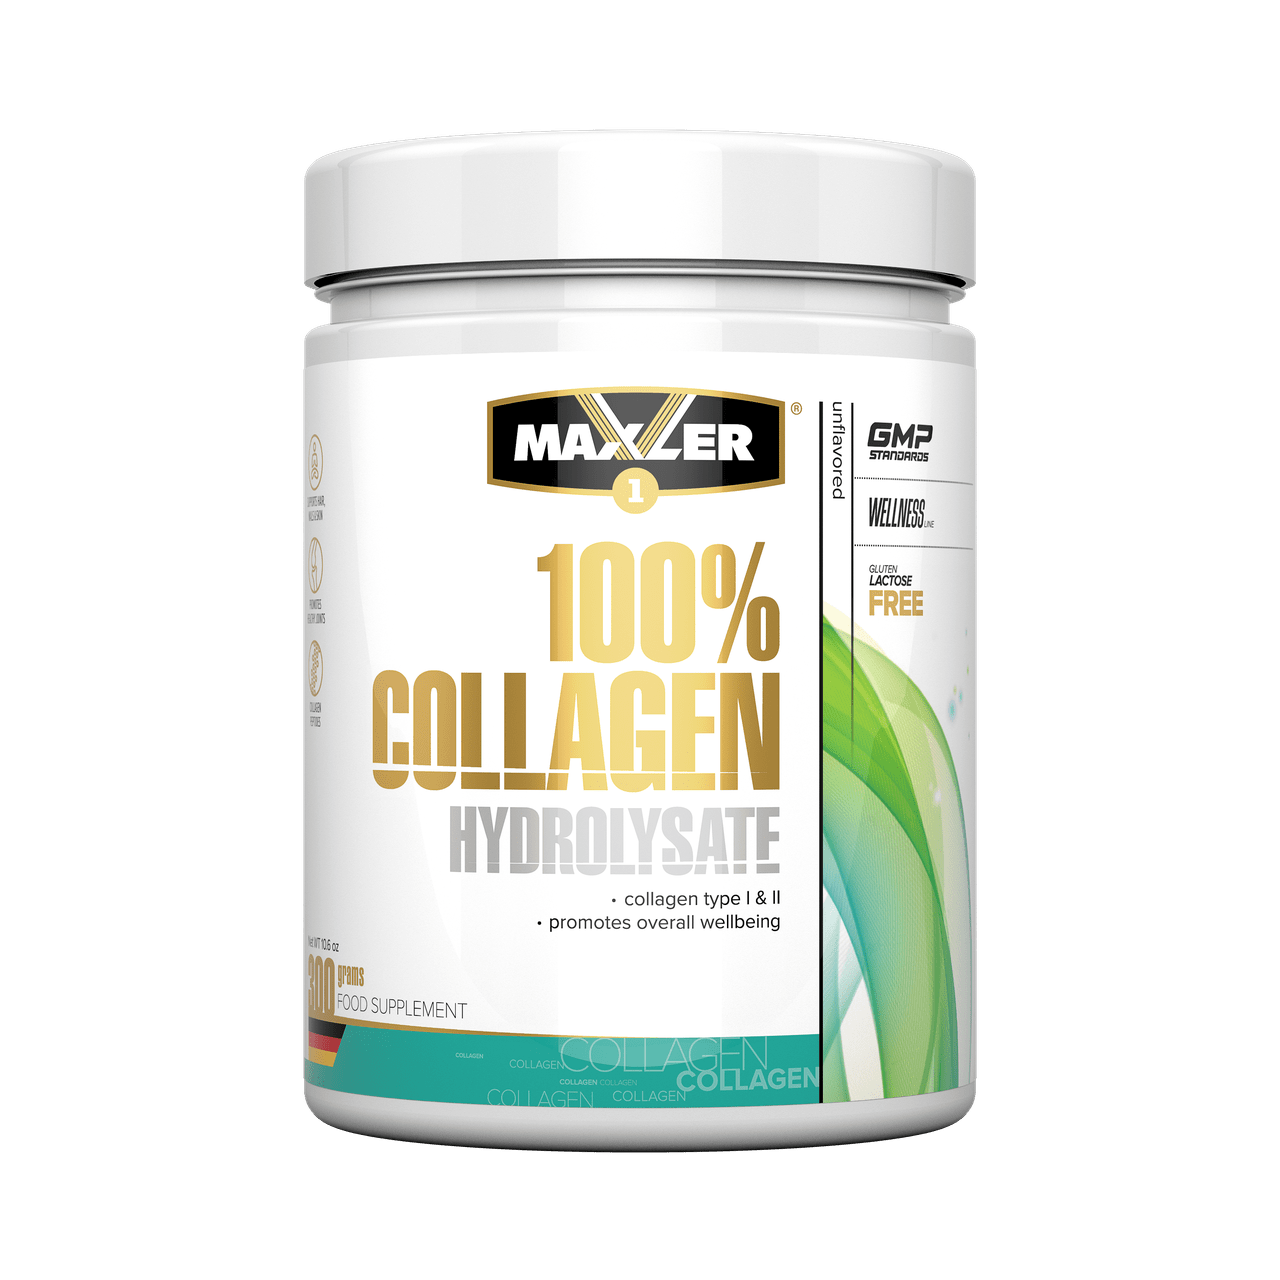 Гидролизованный Коллаген Maxler 100% Hydrolysed Collagen - 300g макслер,  мл, Maxler. Коллаген. Поддержание здоровья Укрепление суставов и связок Здоровье кожи 